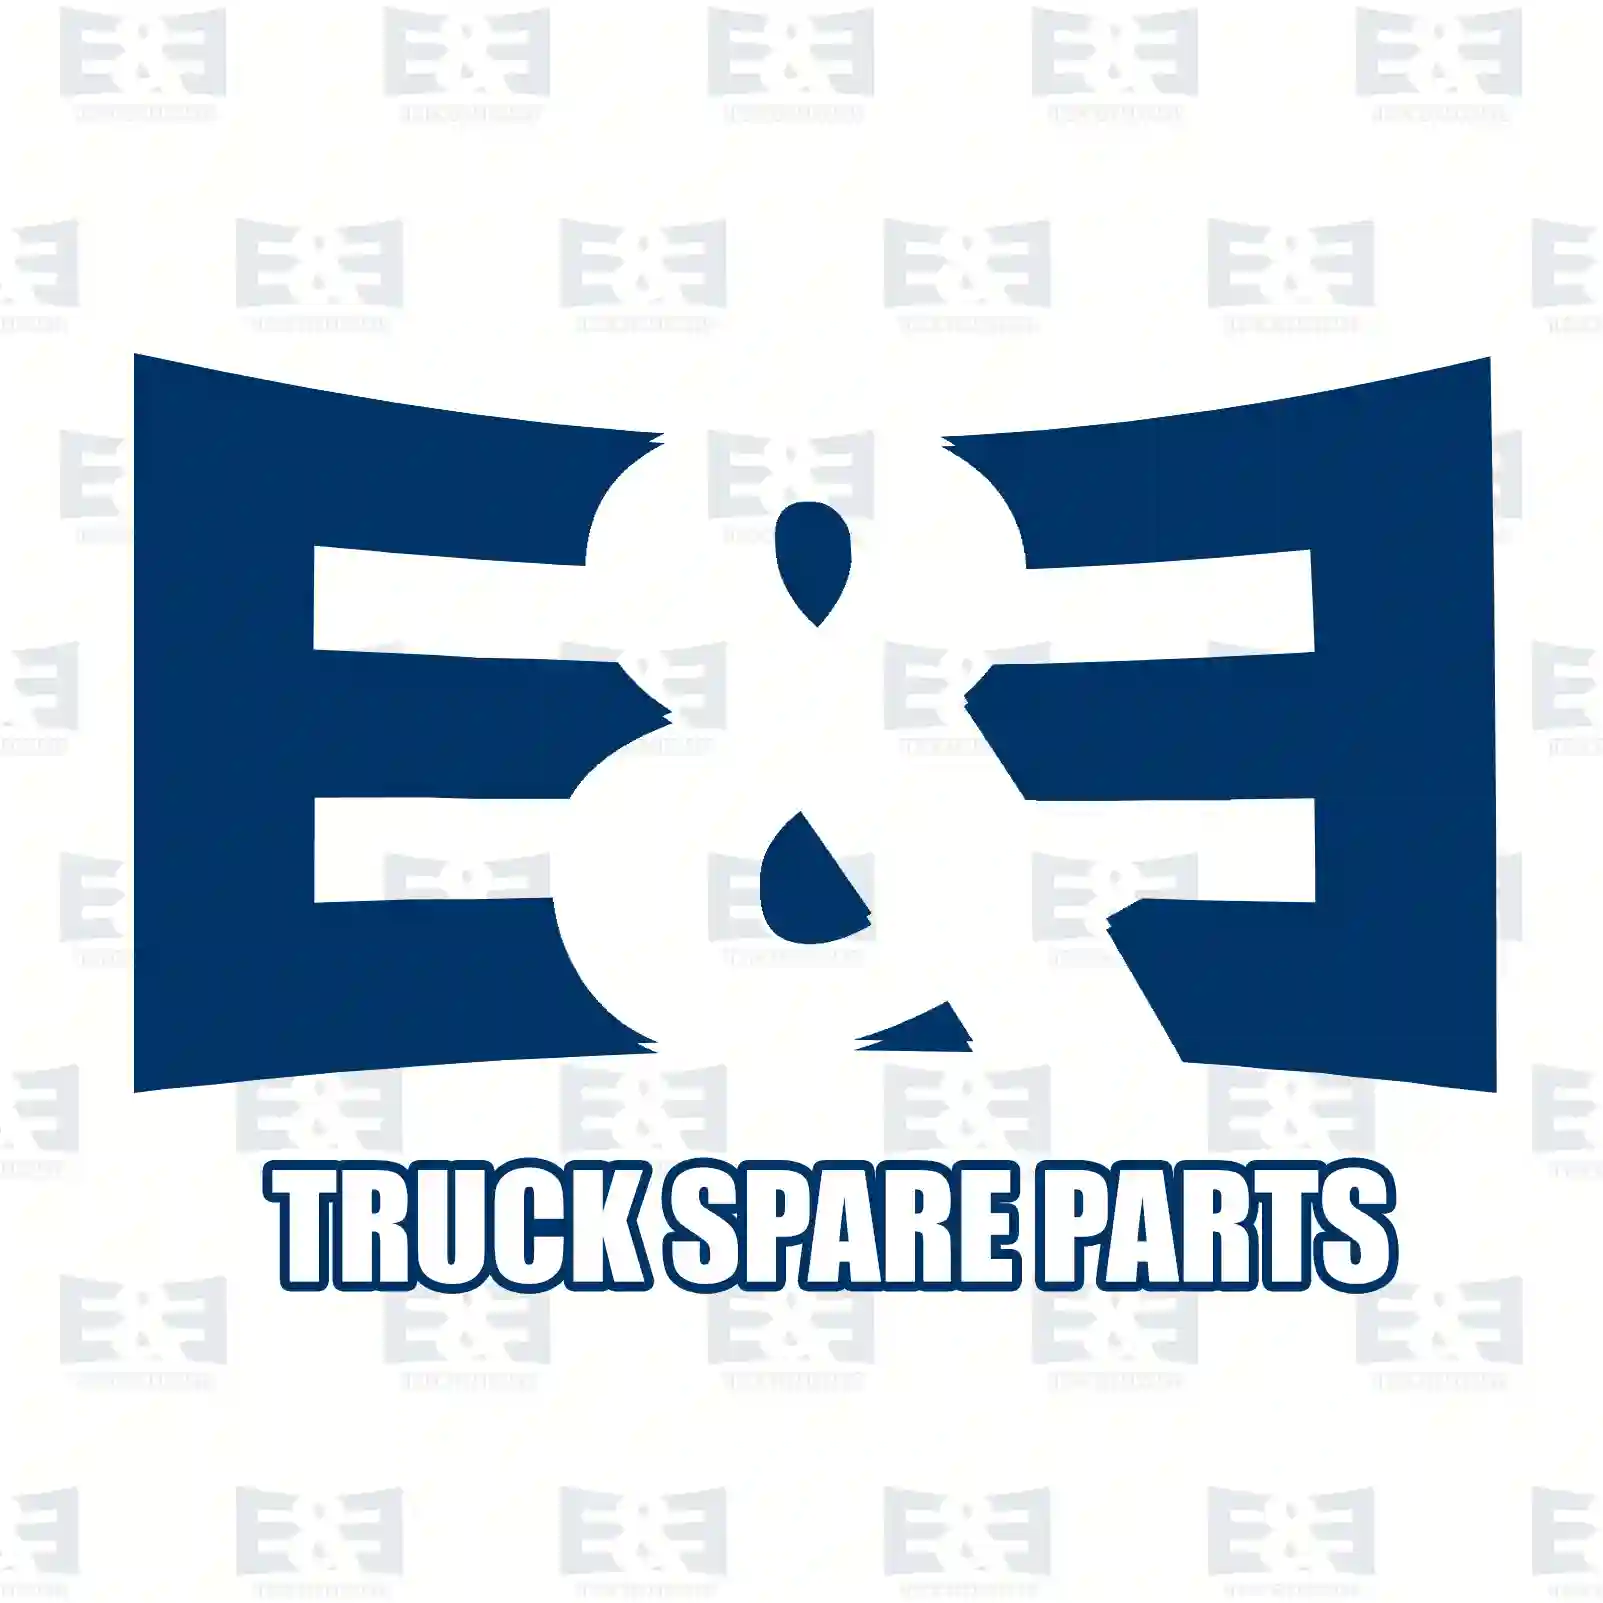 Nut, 2E2285217, 000934006007, 000934006029, 304032006004, 815122 ||  2E2285217 E&E Truck Spare Parts | Truck Spare Parts, Auotomotive Spare Parts Nut, 2E2285217, 000934006007, 000934006029, 304032006004, 815122 ||  2E2285217 E&E Truck Spare Parts | Truck Spare Parts, Auotomotive Spare Parts